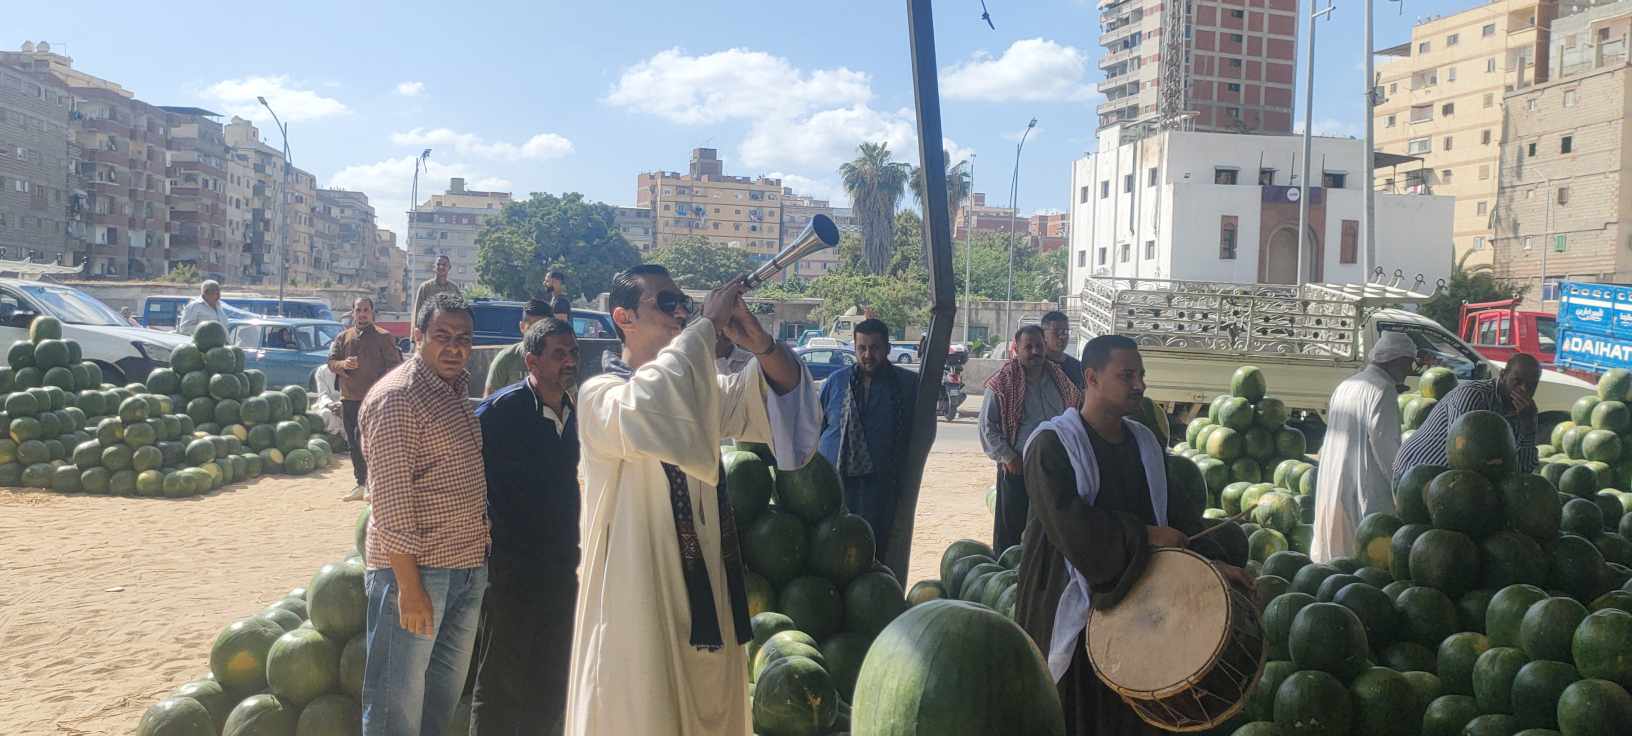 بالمزماز الصعيدي افتتاح مزاد بيع البطيخ في الإسكندرية